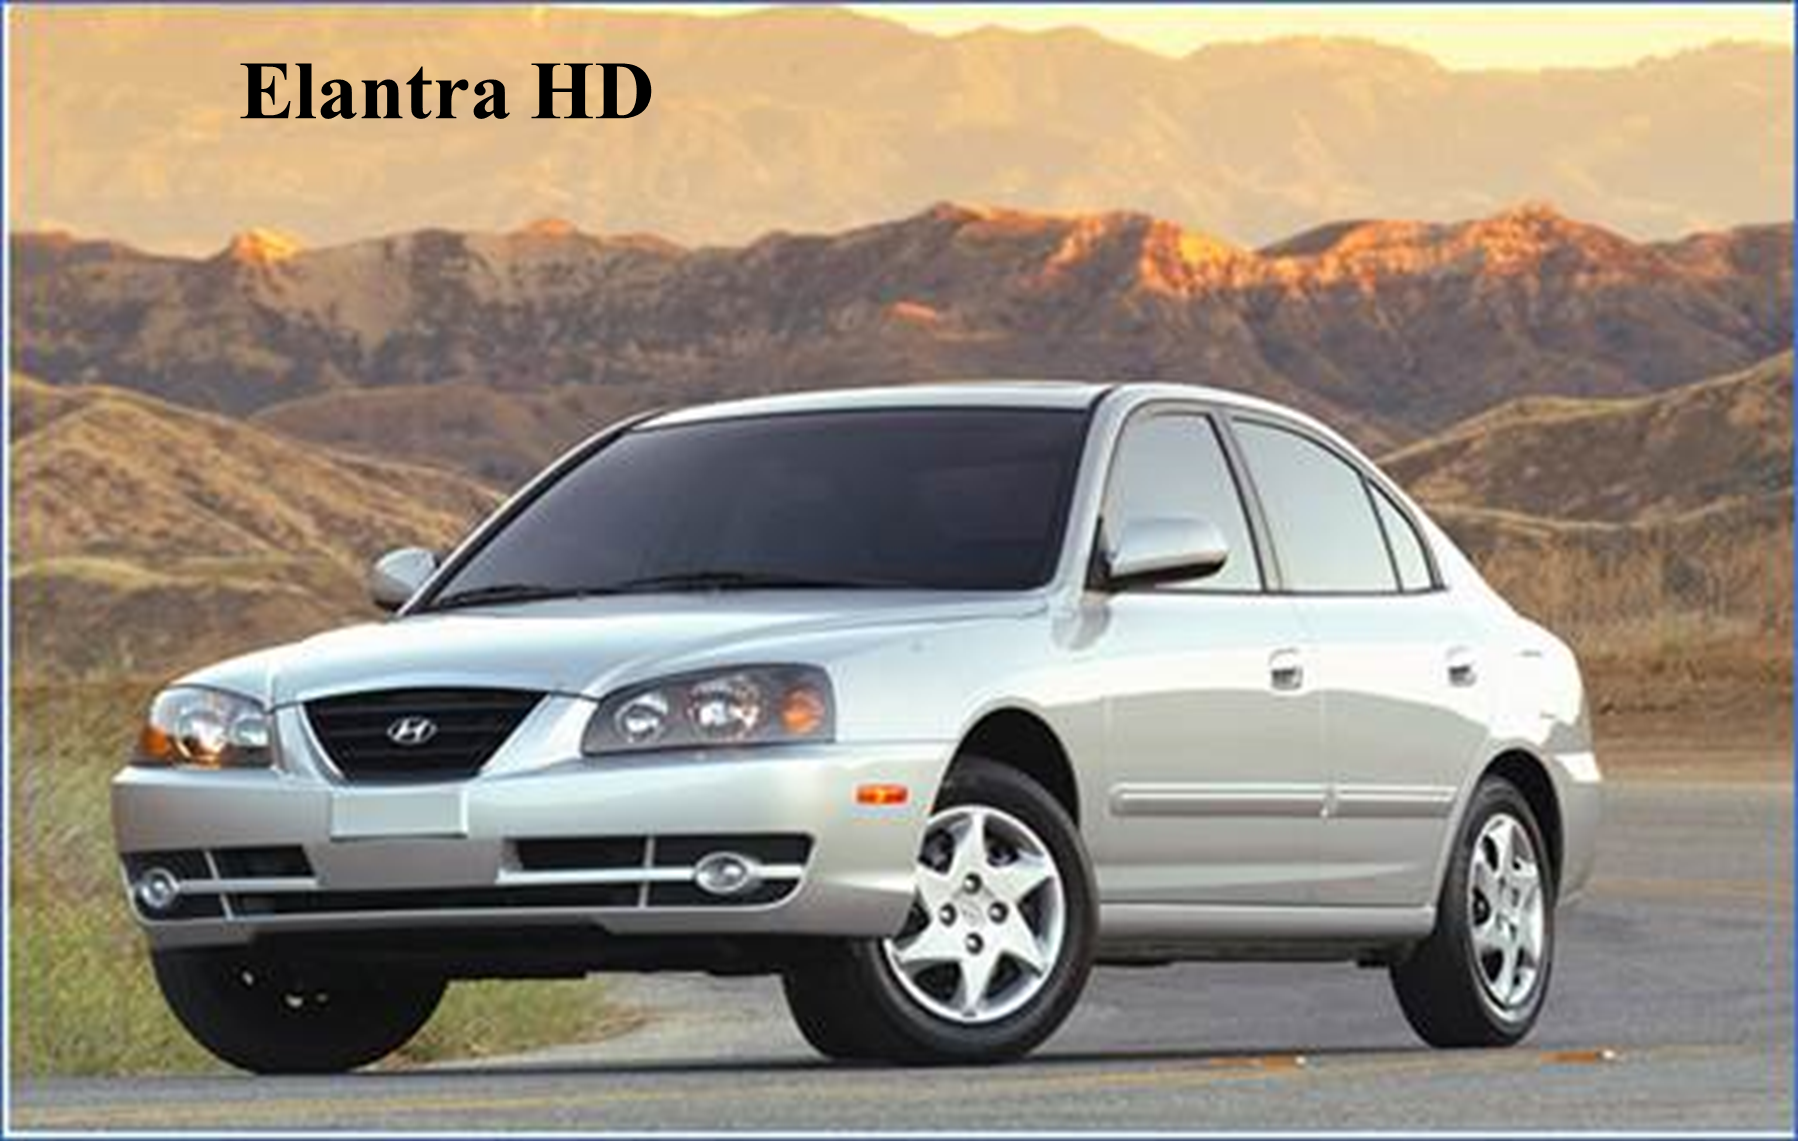 Alerta de Seguridad: Vehículos Hyundai, modelos Elantra HD e I30, años 2005 - 2011.